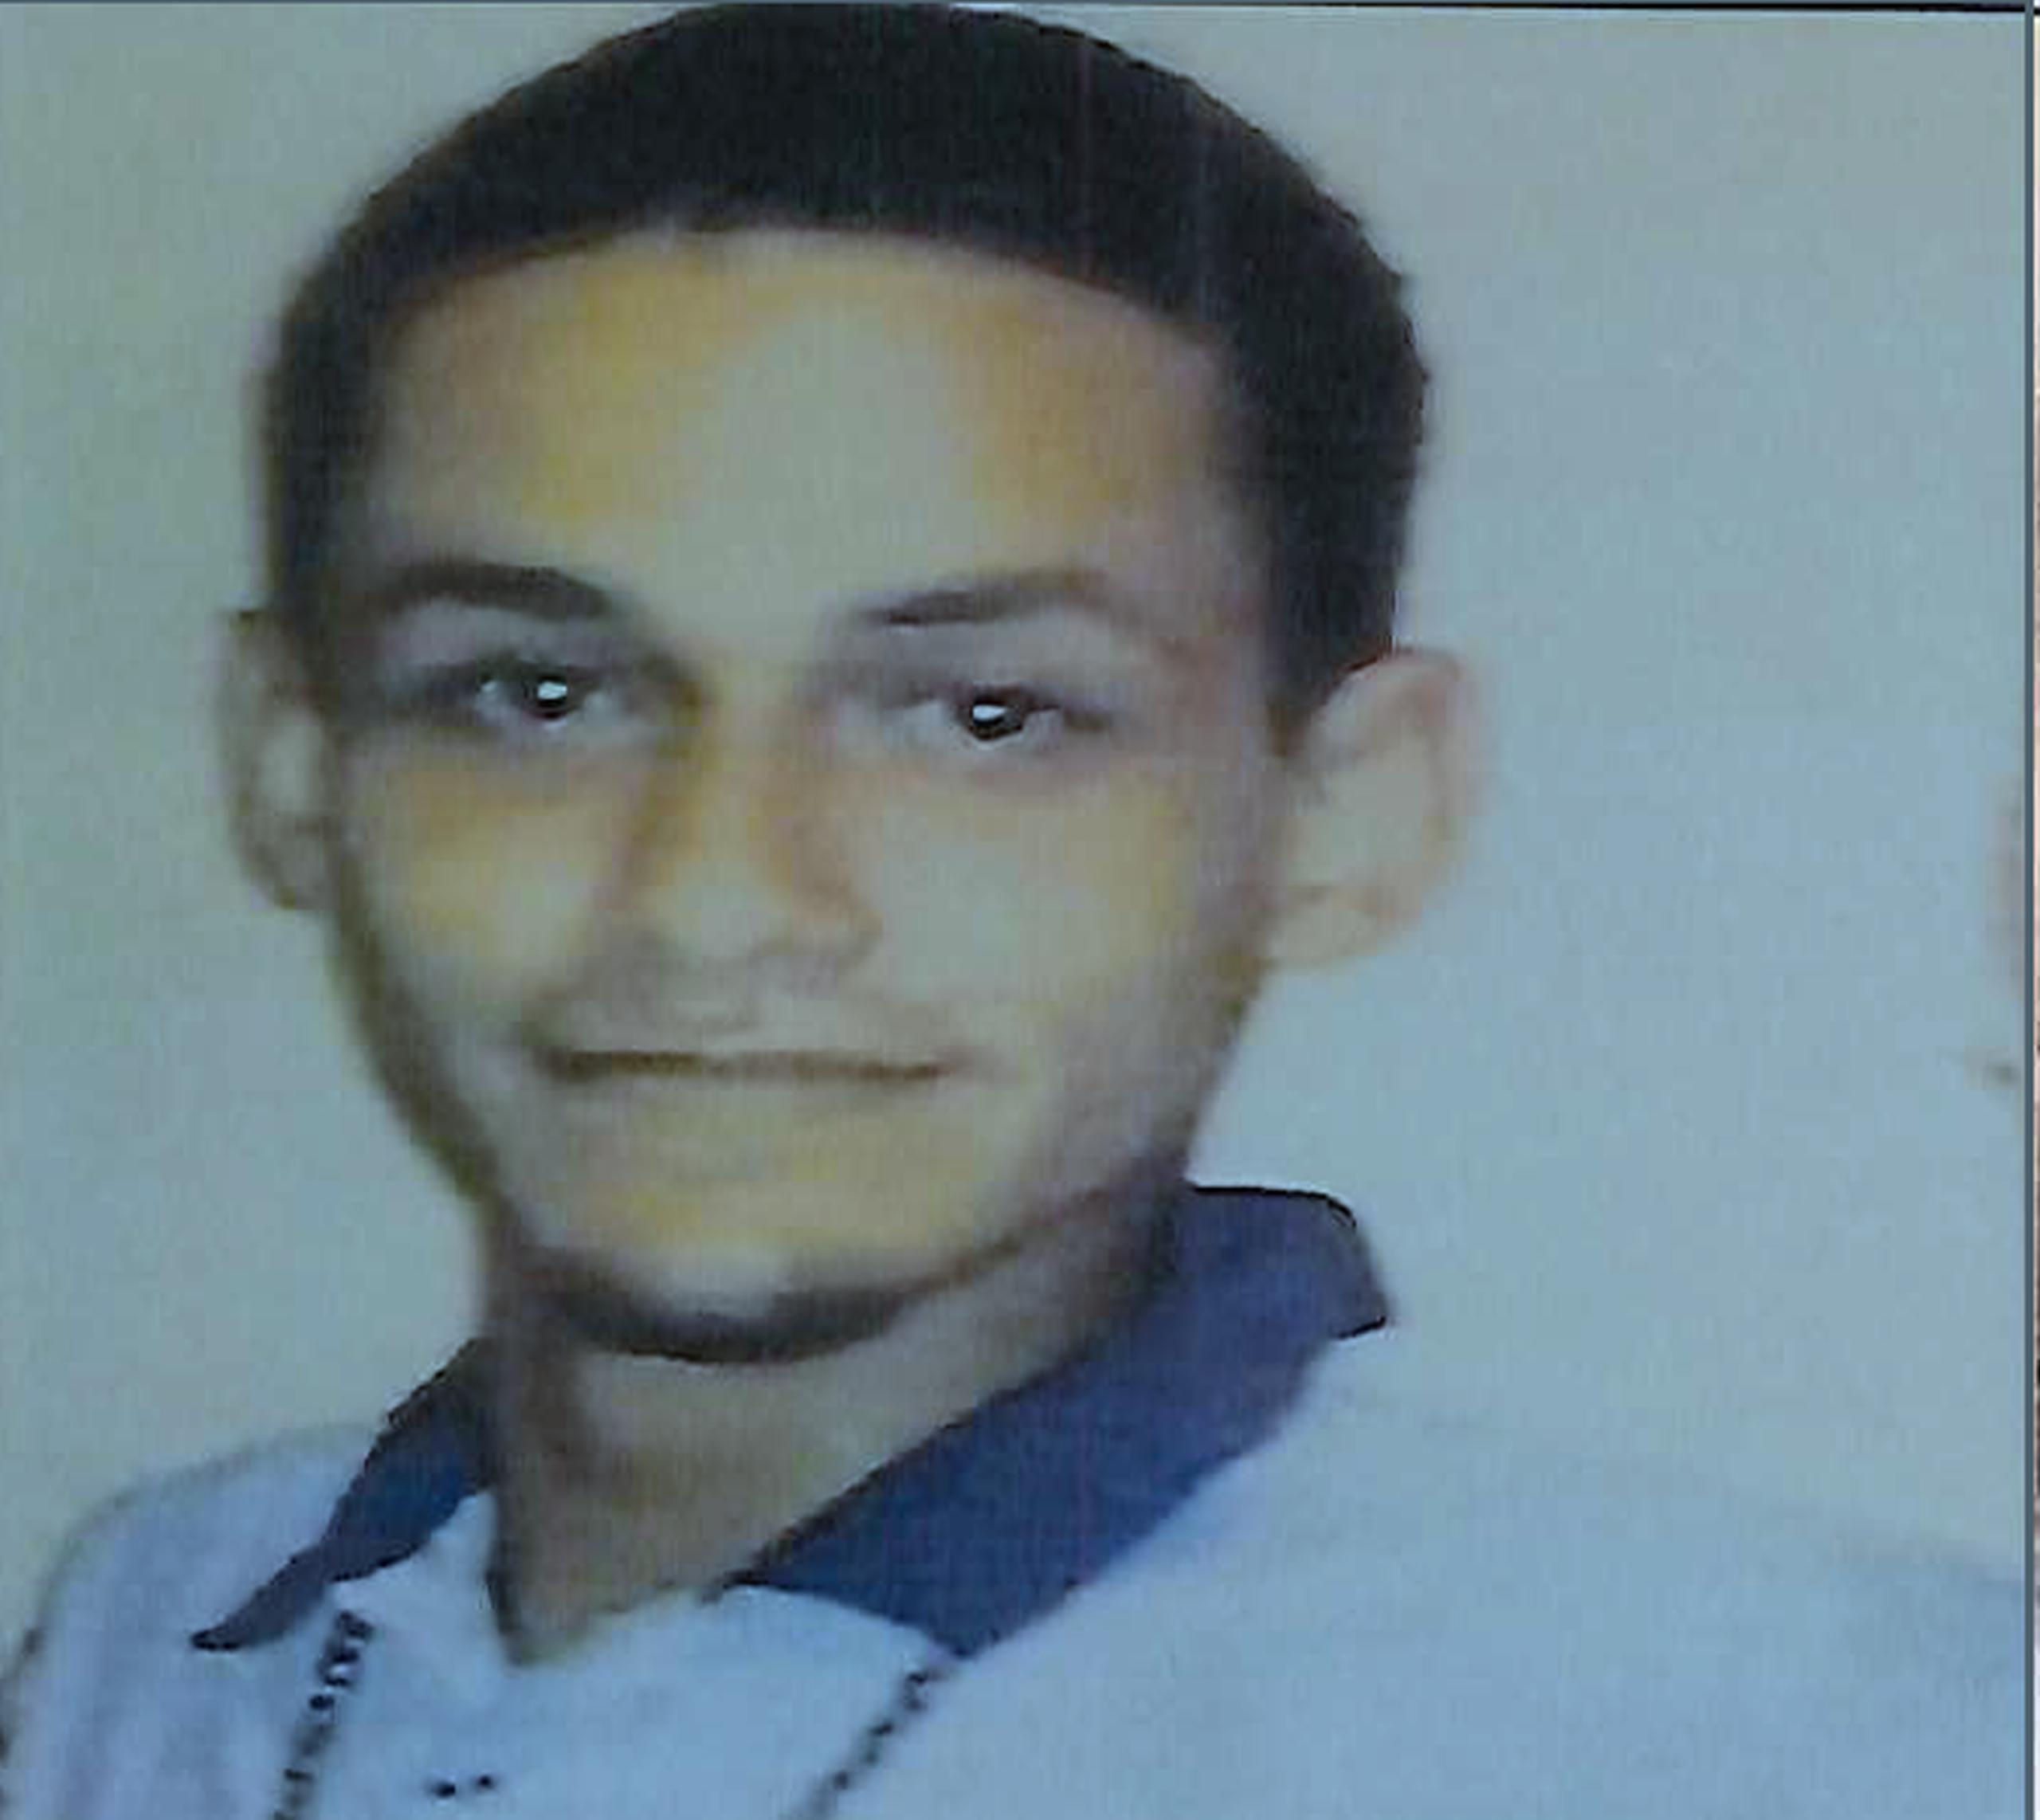 Pedro Roberto Delgado Morales de 28 años, se encuentra desaparecido desde abril, si lo ha visto llame al (787) 793-1234 extensión 2463.